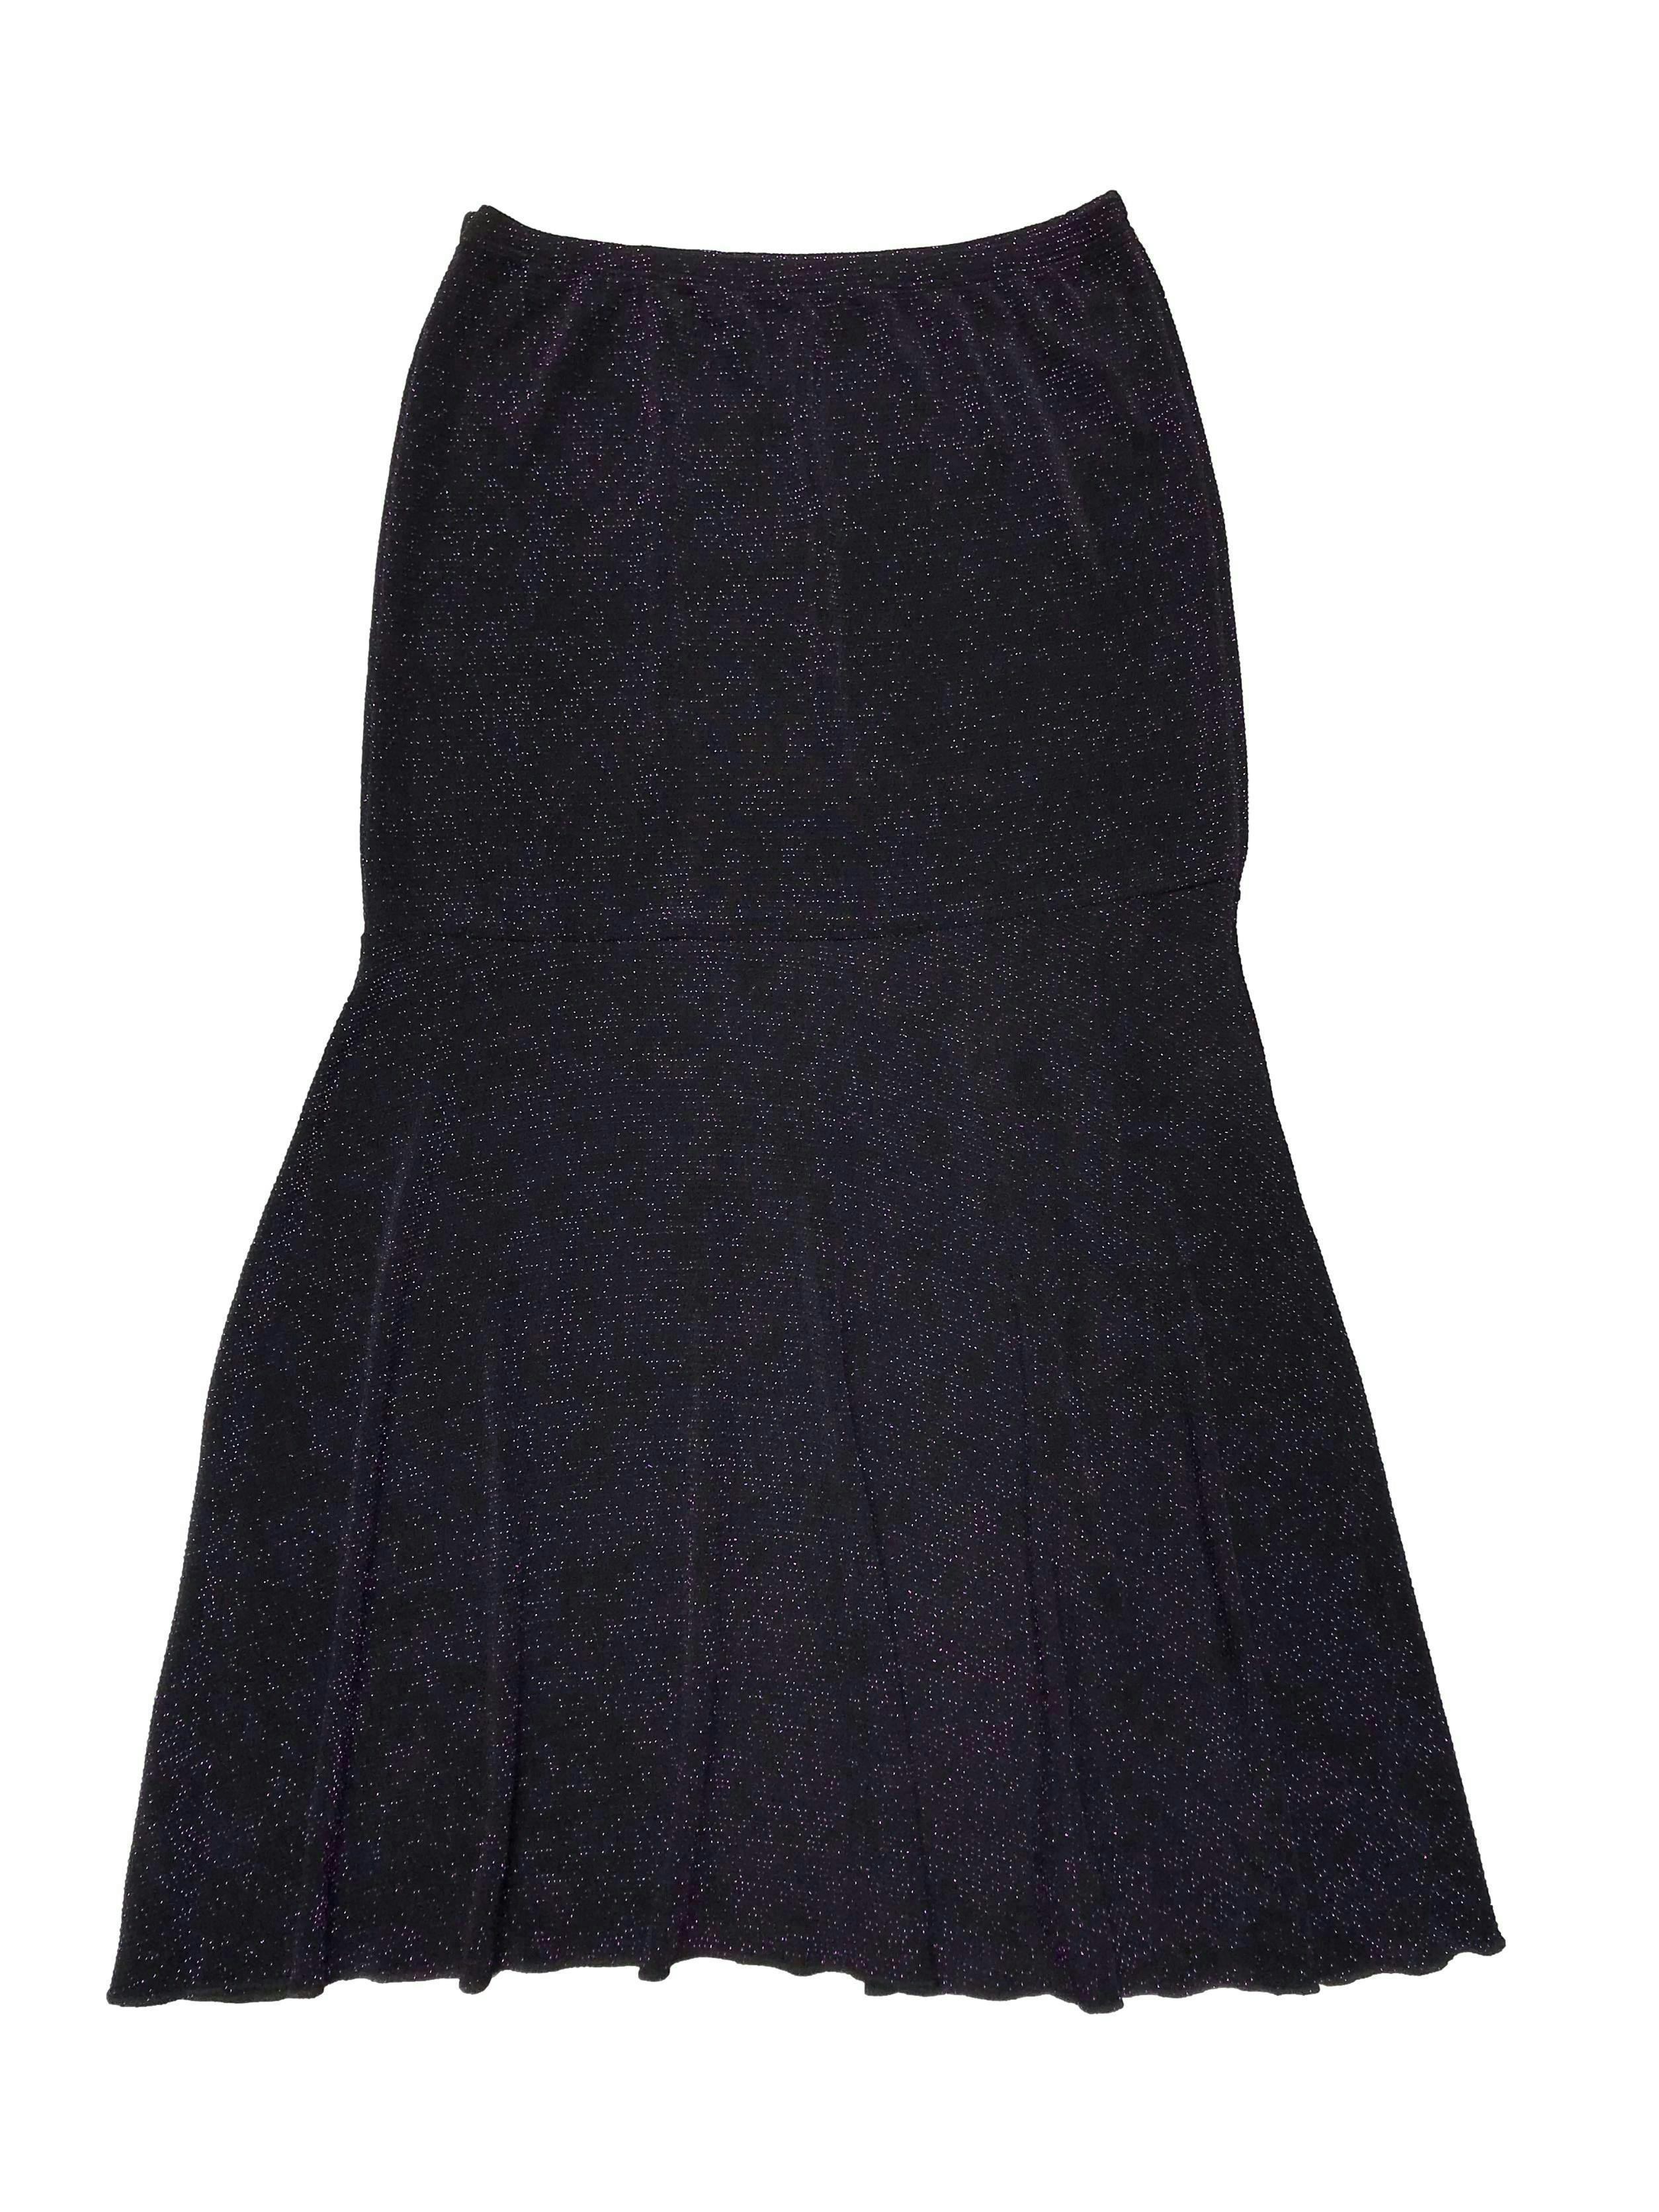 Falda midi negra con textura escarchada morda, pegada con volante en la basta, es stretch. Largo 80cm